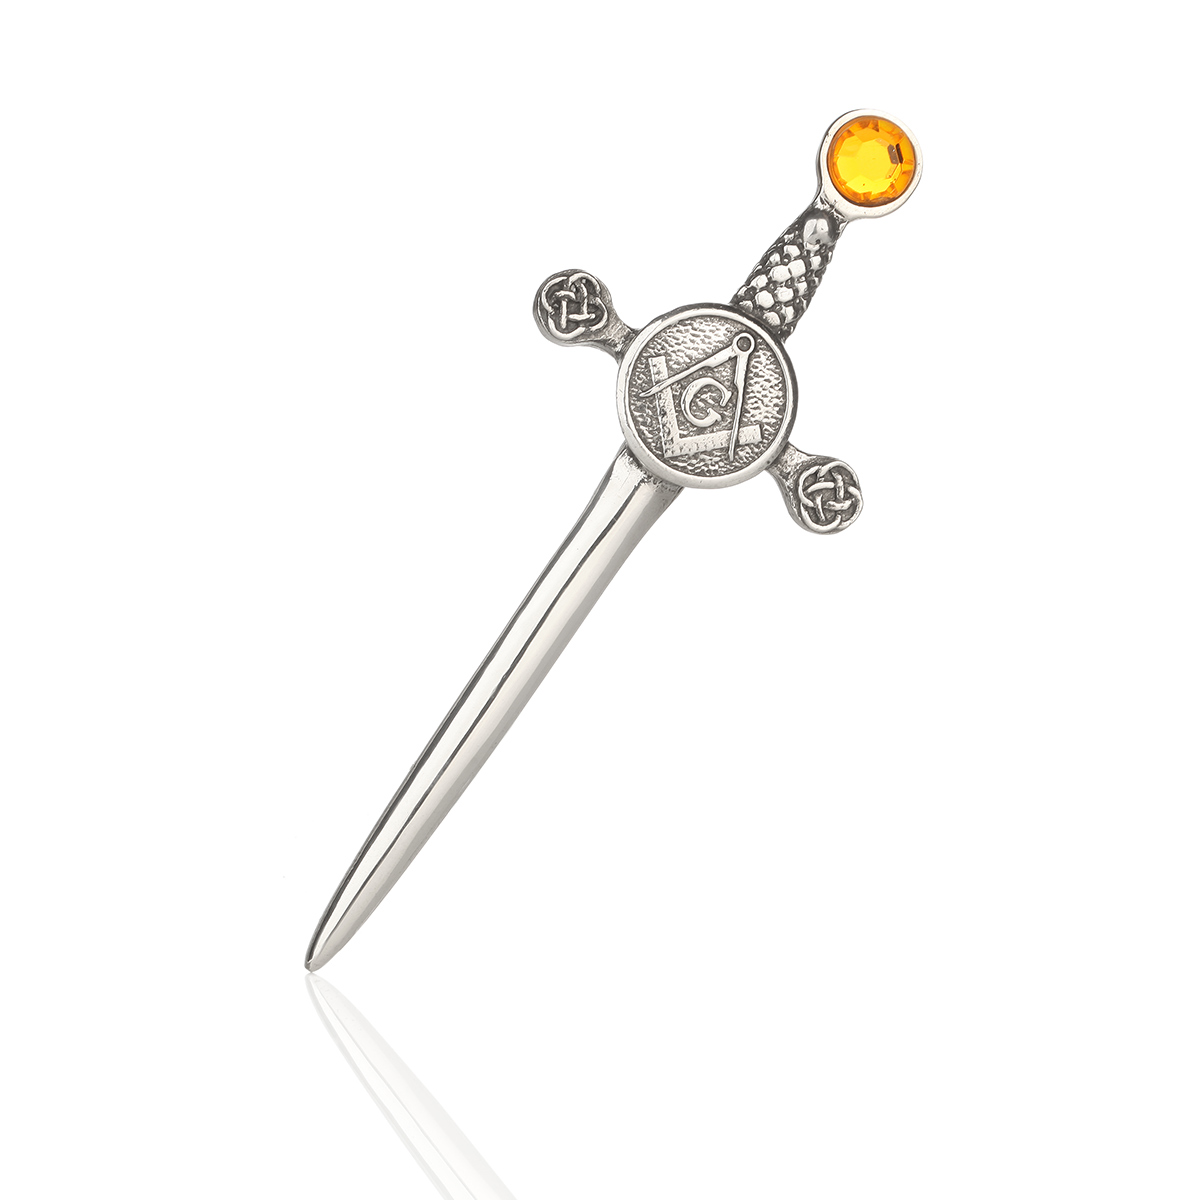 Masonischer Kilt Pin mit dem Freimaurer Wappen - Zinn & Kristall